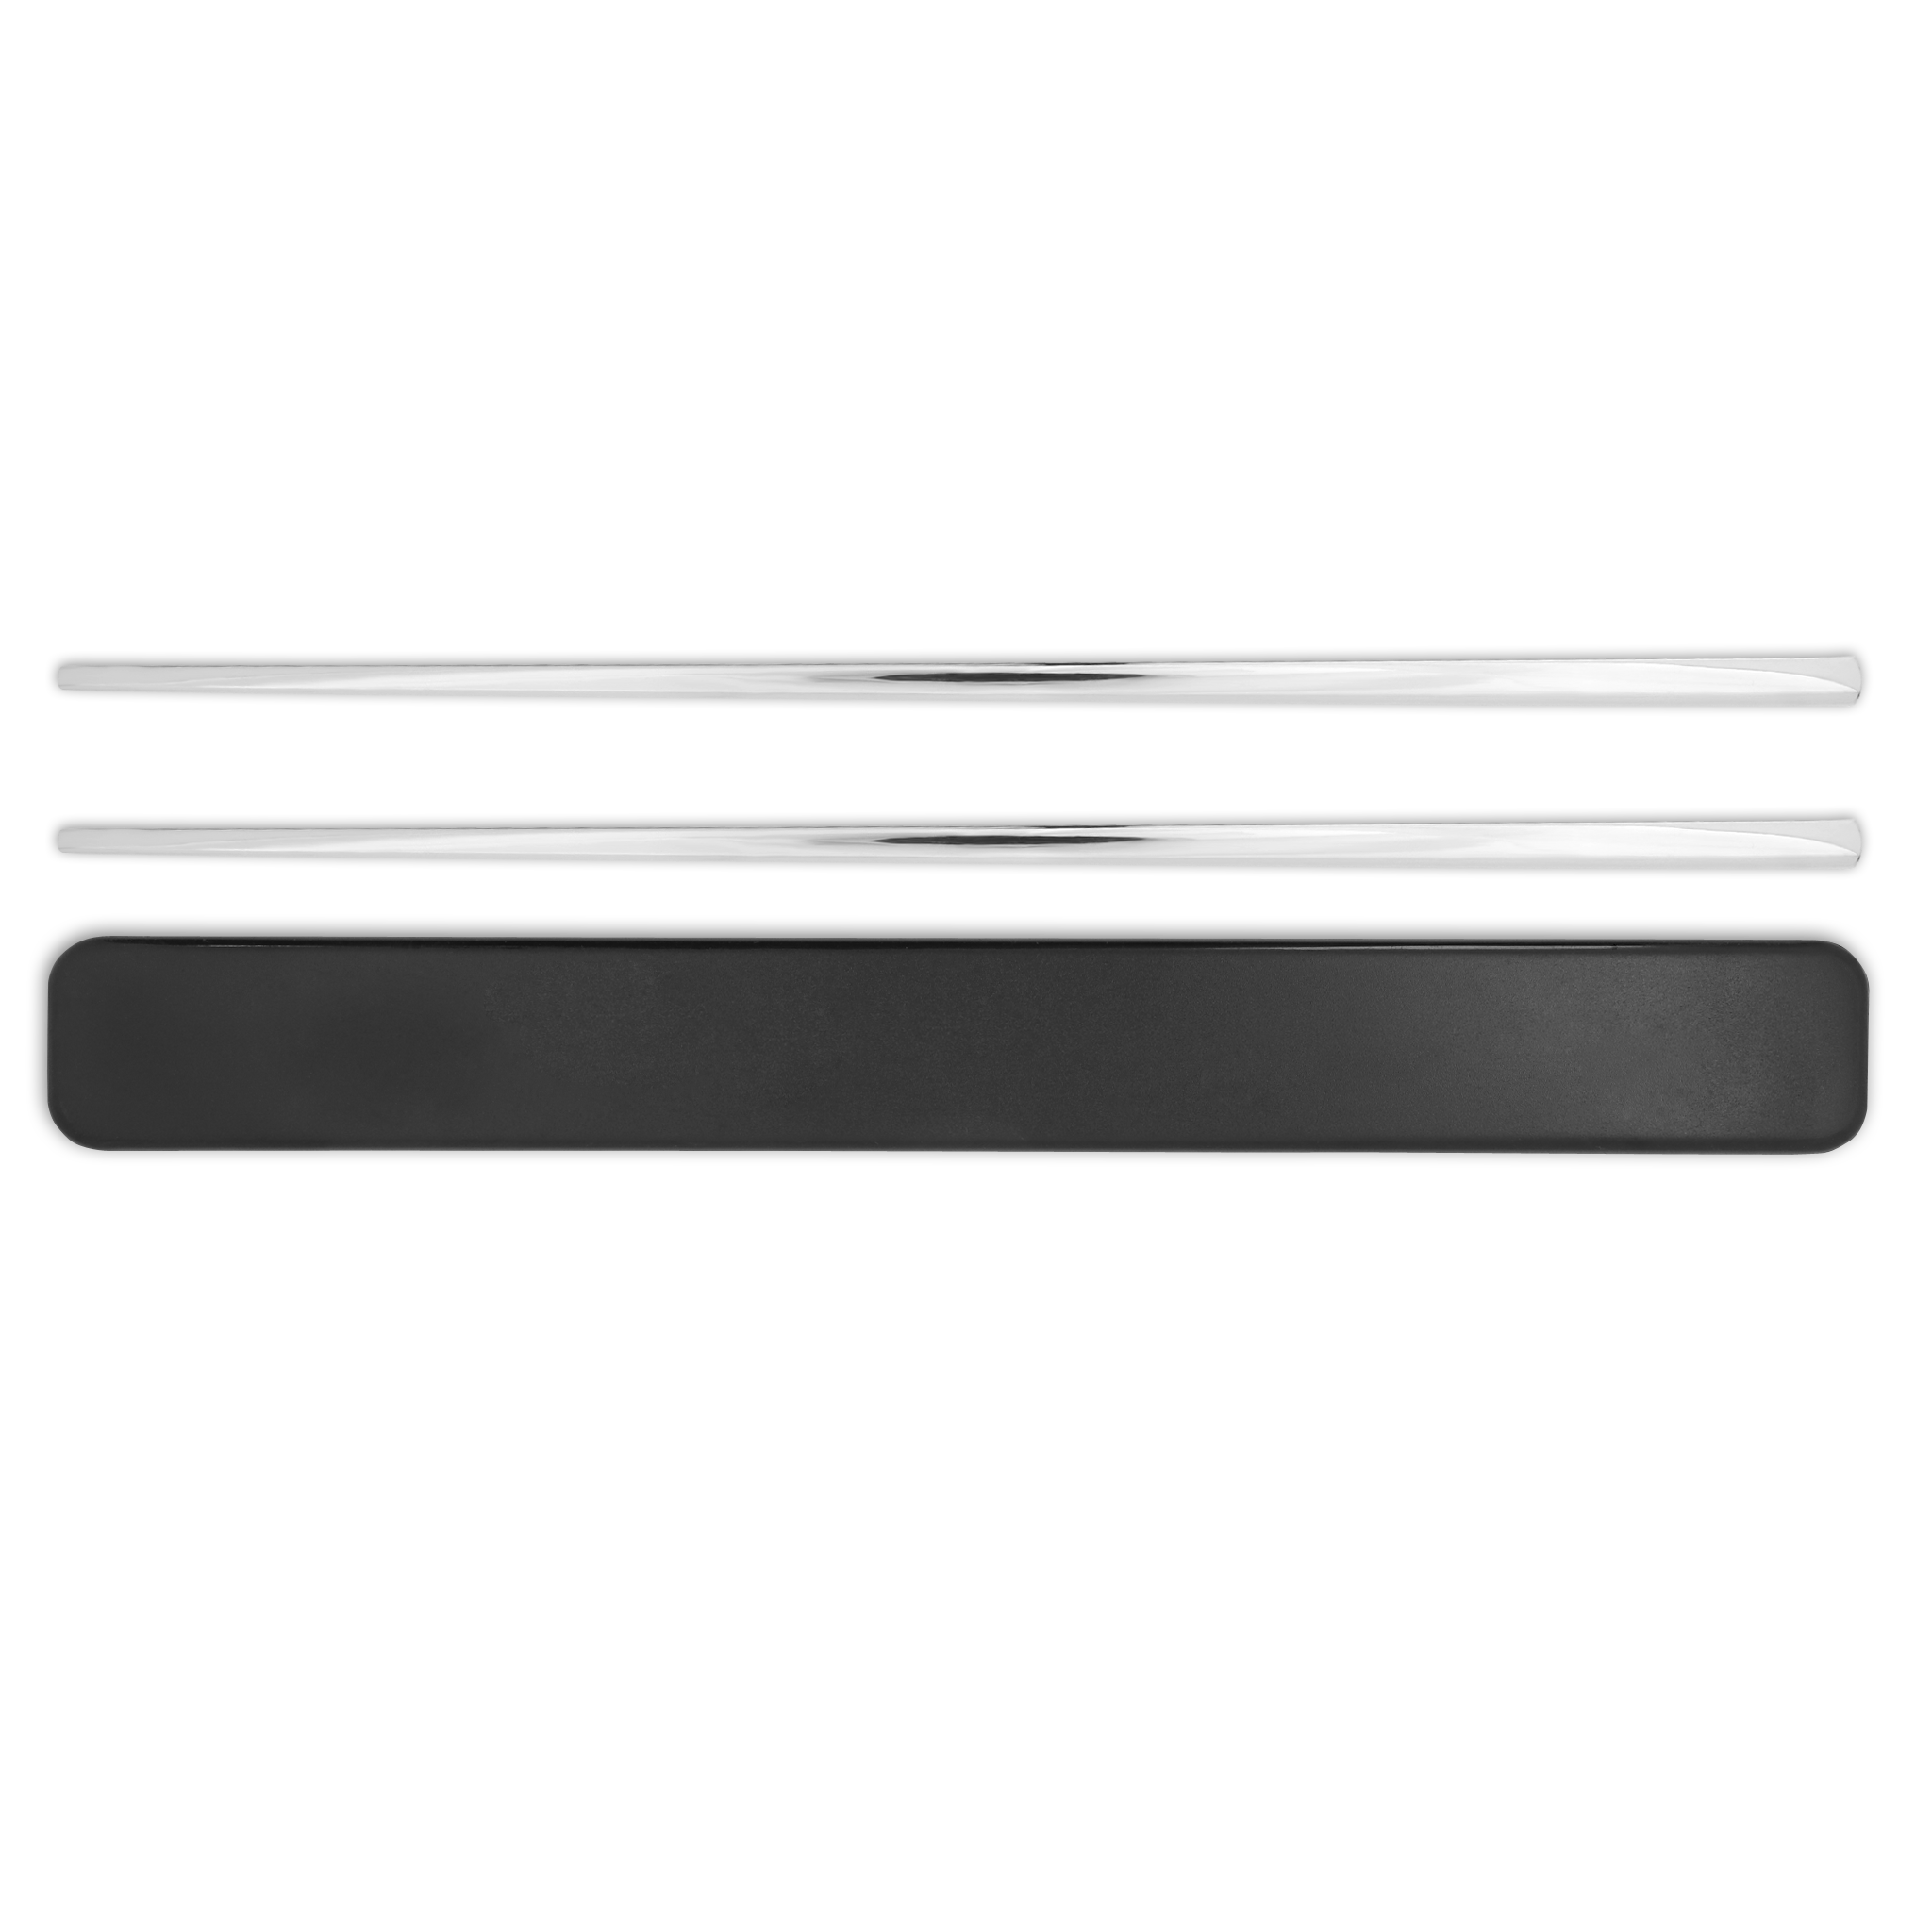 Stainless Steel Reusable Chopsticks Set (Silver)